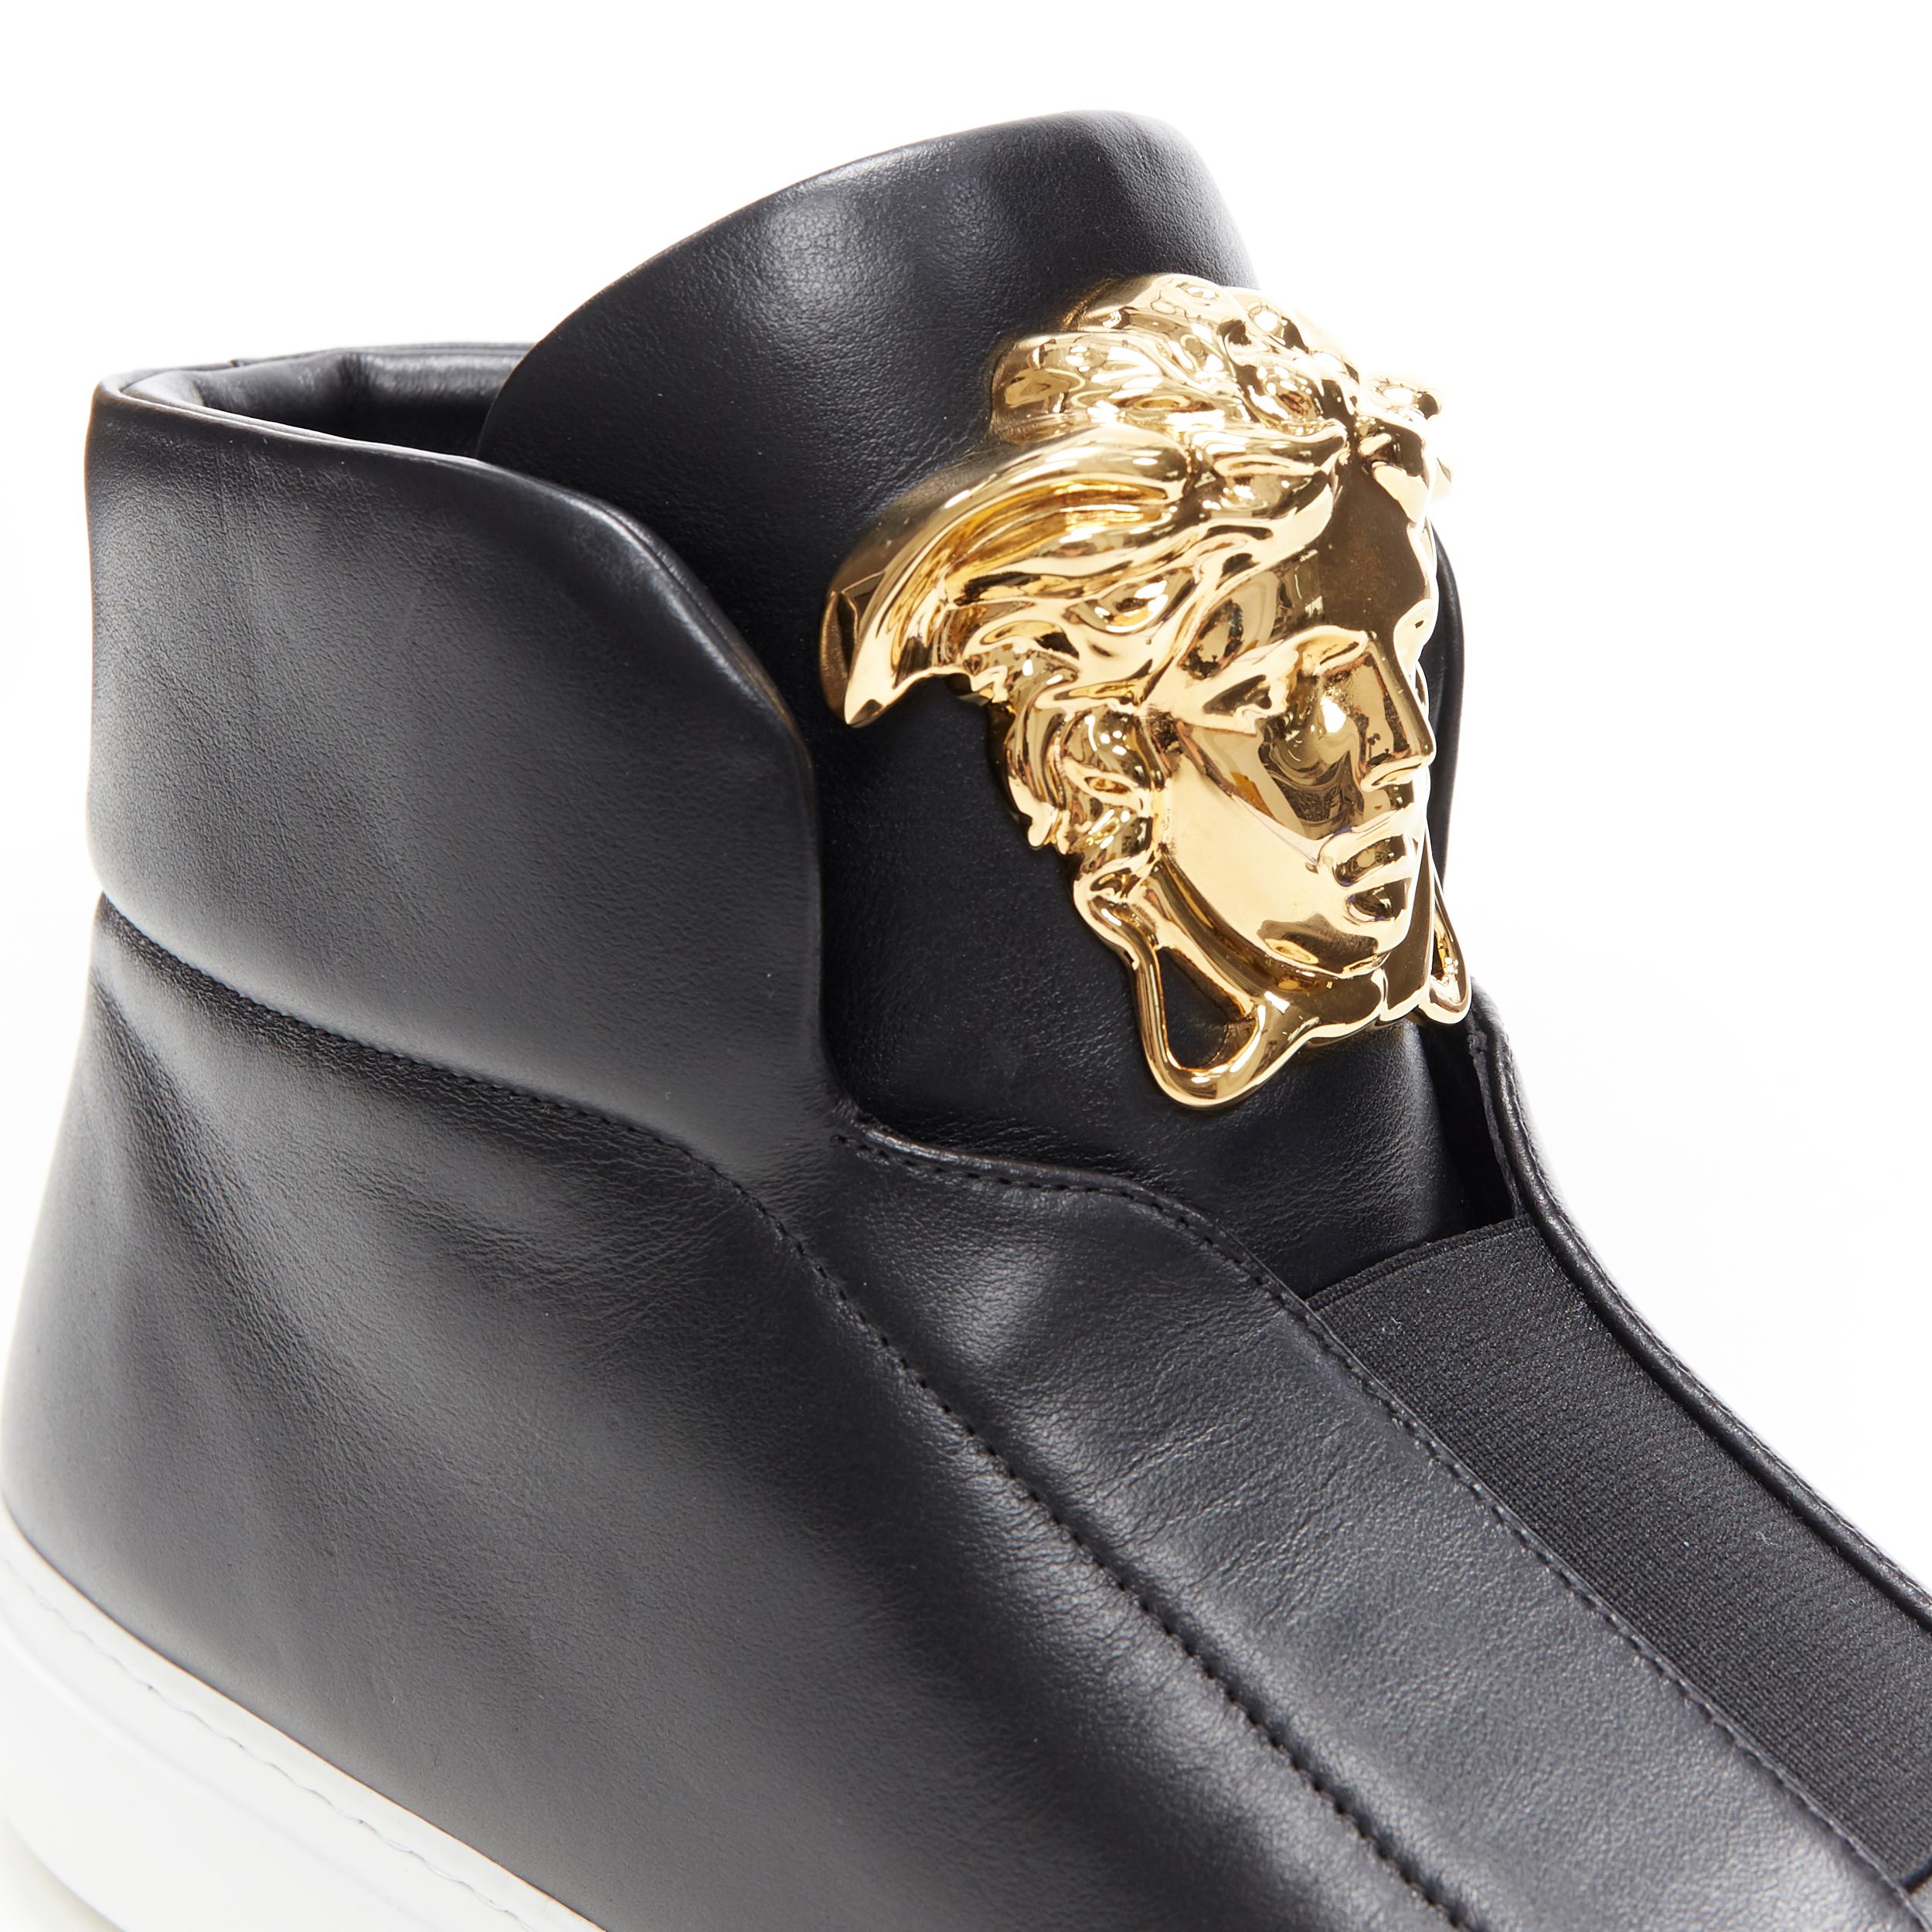 Women's new VERSACE Palazzo gold Medusa black calfskin leather high top sneaker EU41